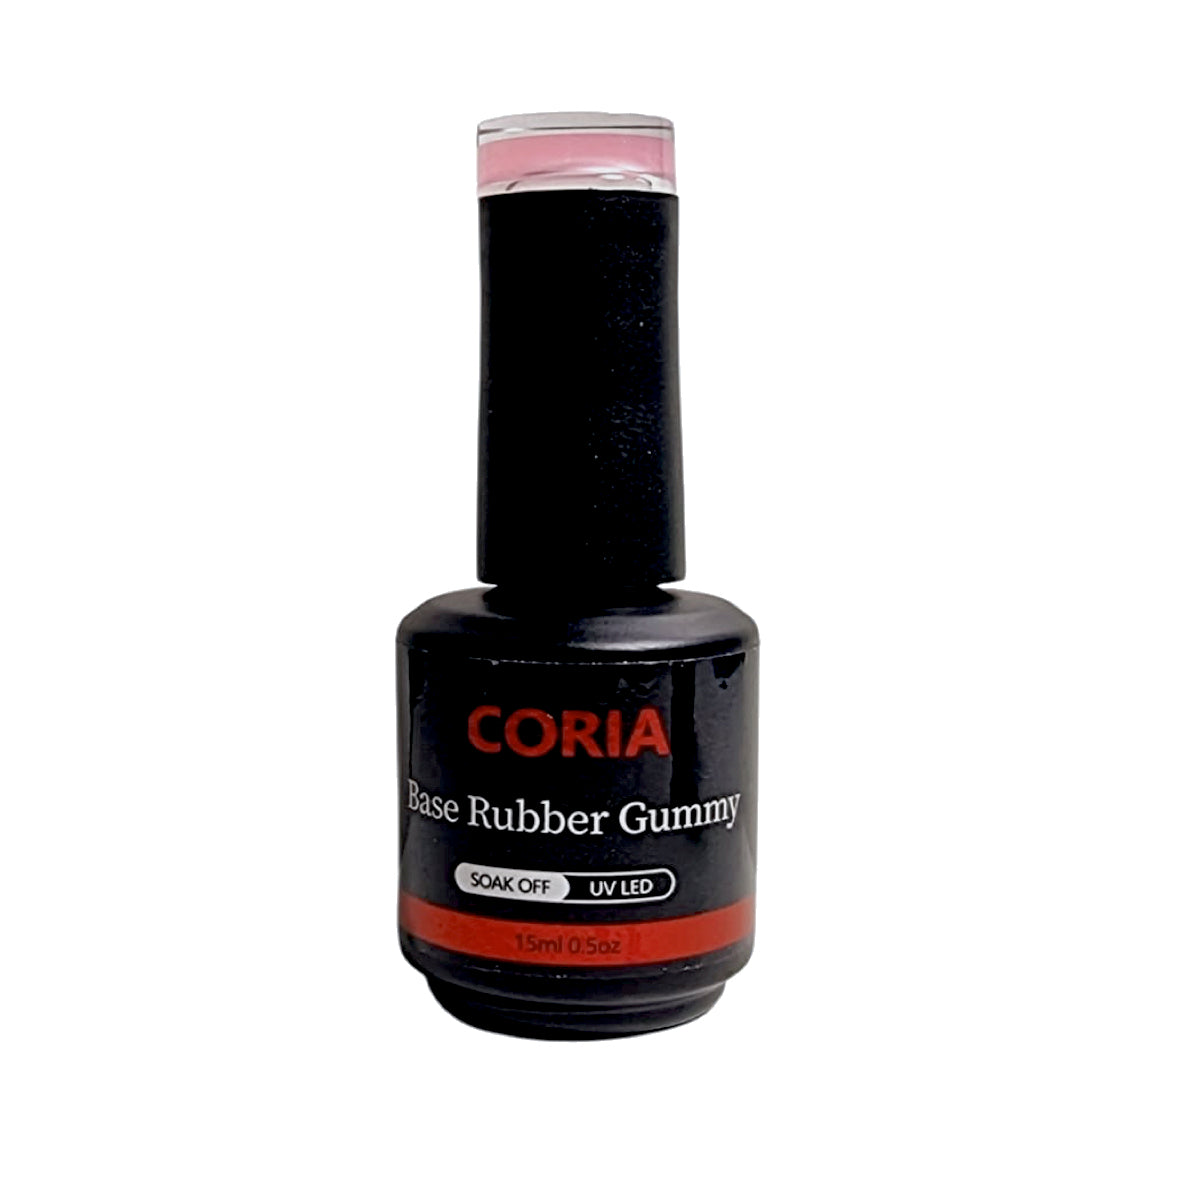 Baza Rubber Gummy Coria 032 Perfect French Nude 15 ml